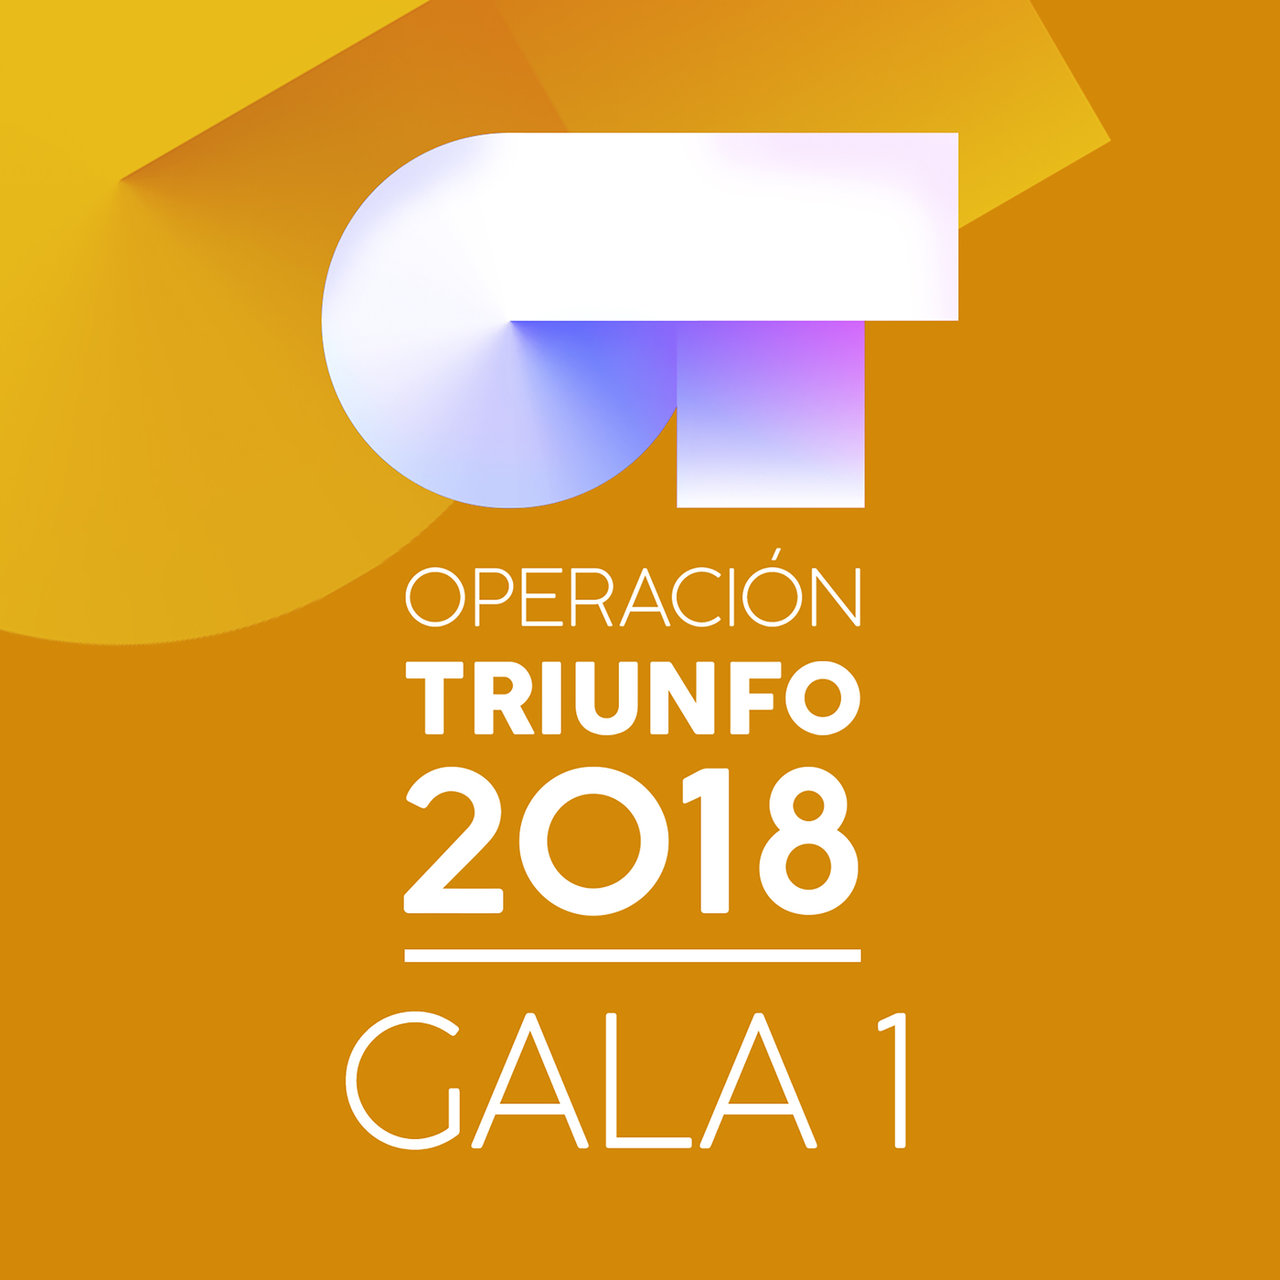 Operación Triunfo 2018 OT Gala 1 (Operación Triunfo 2018) cover artwork